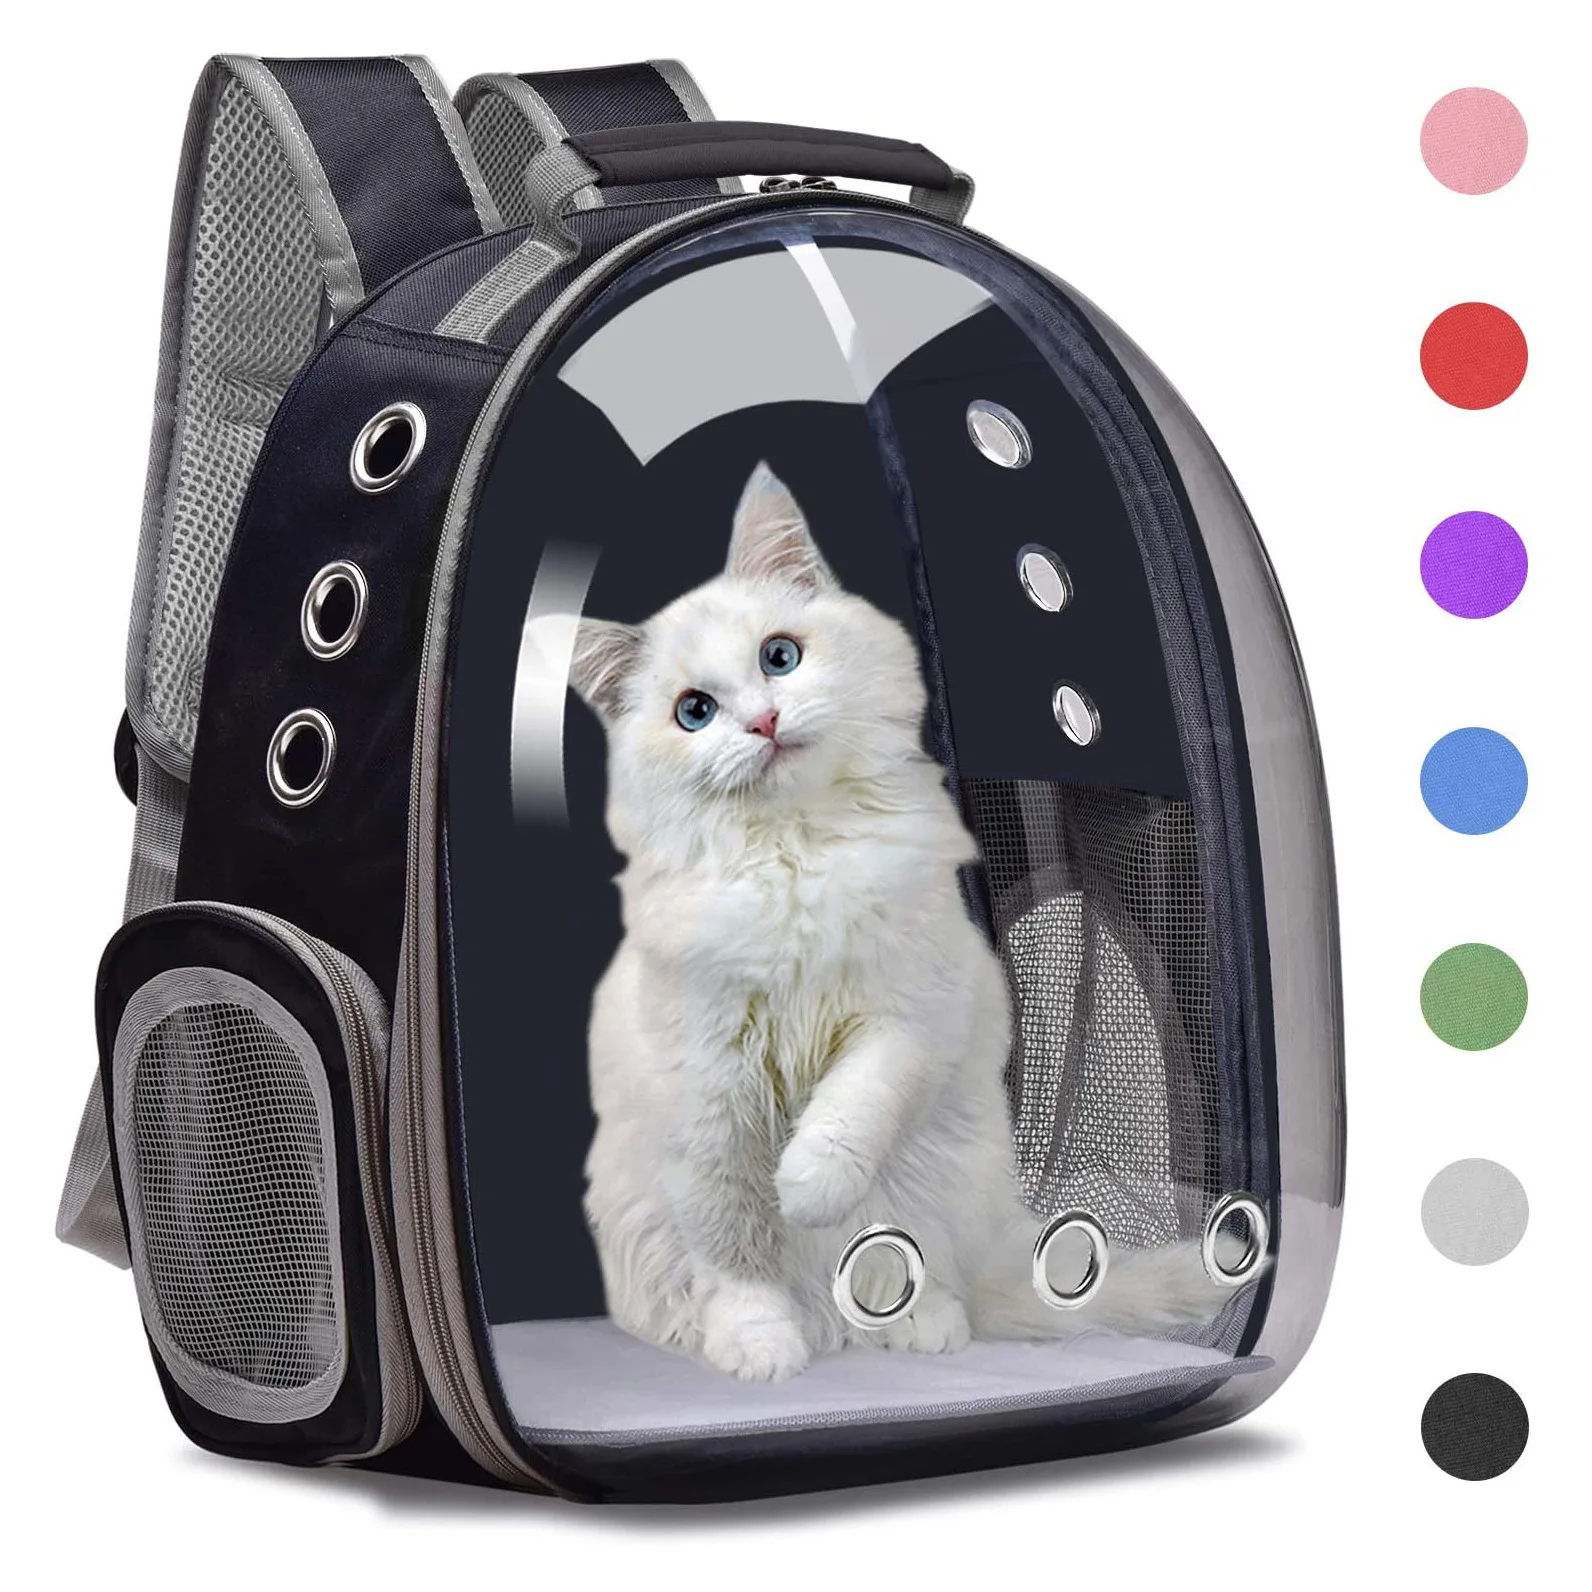 

Воздухопроницаемый рюкзак для домашних животных, переносная вместительная сумка для питомцев, клетка, рюкзак для транспортировки питомцев...